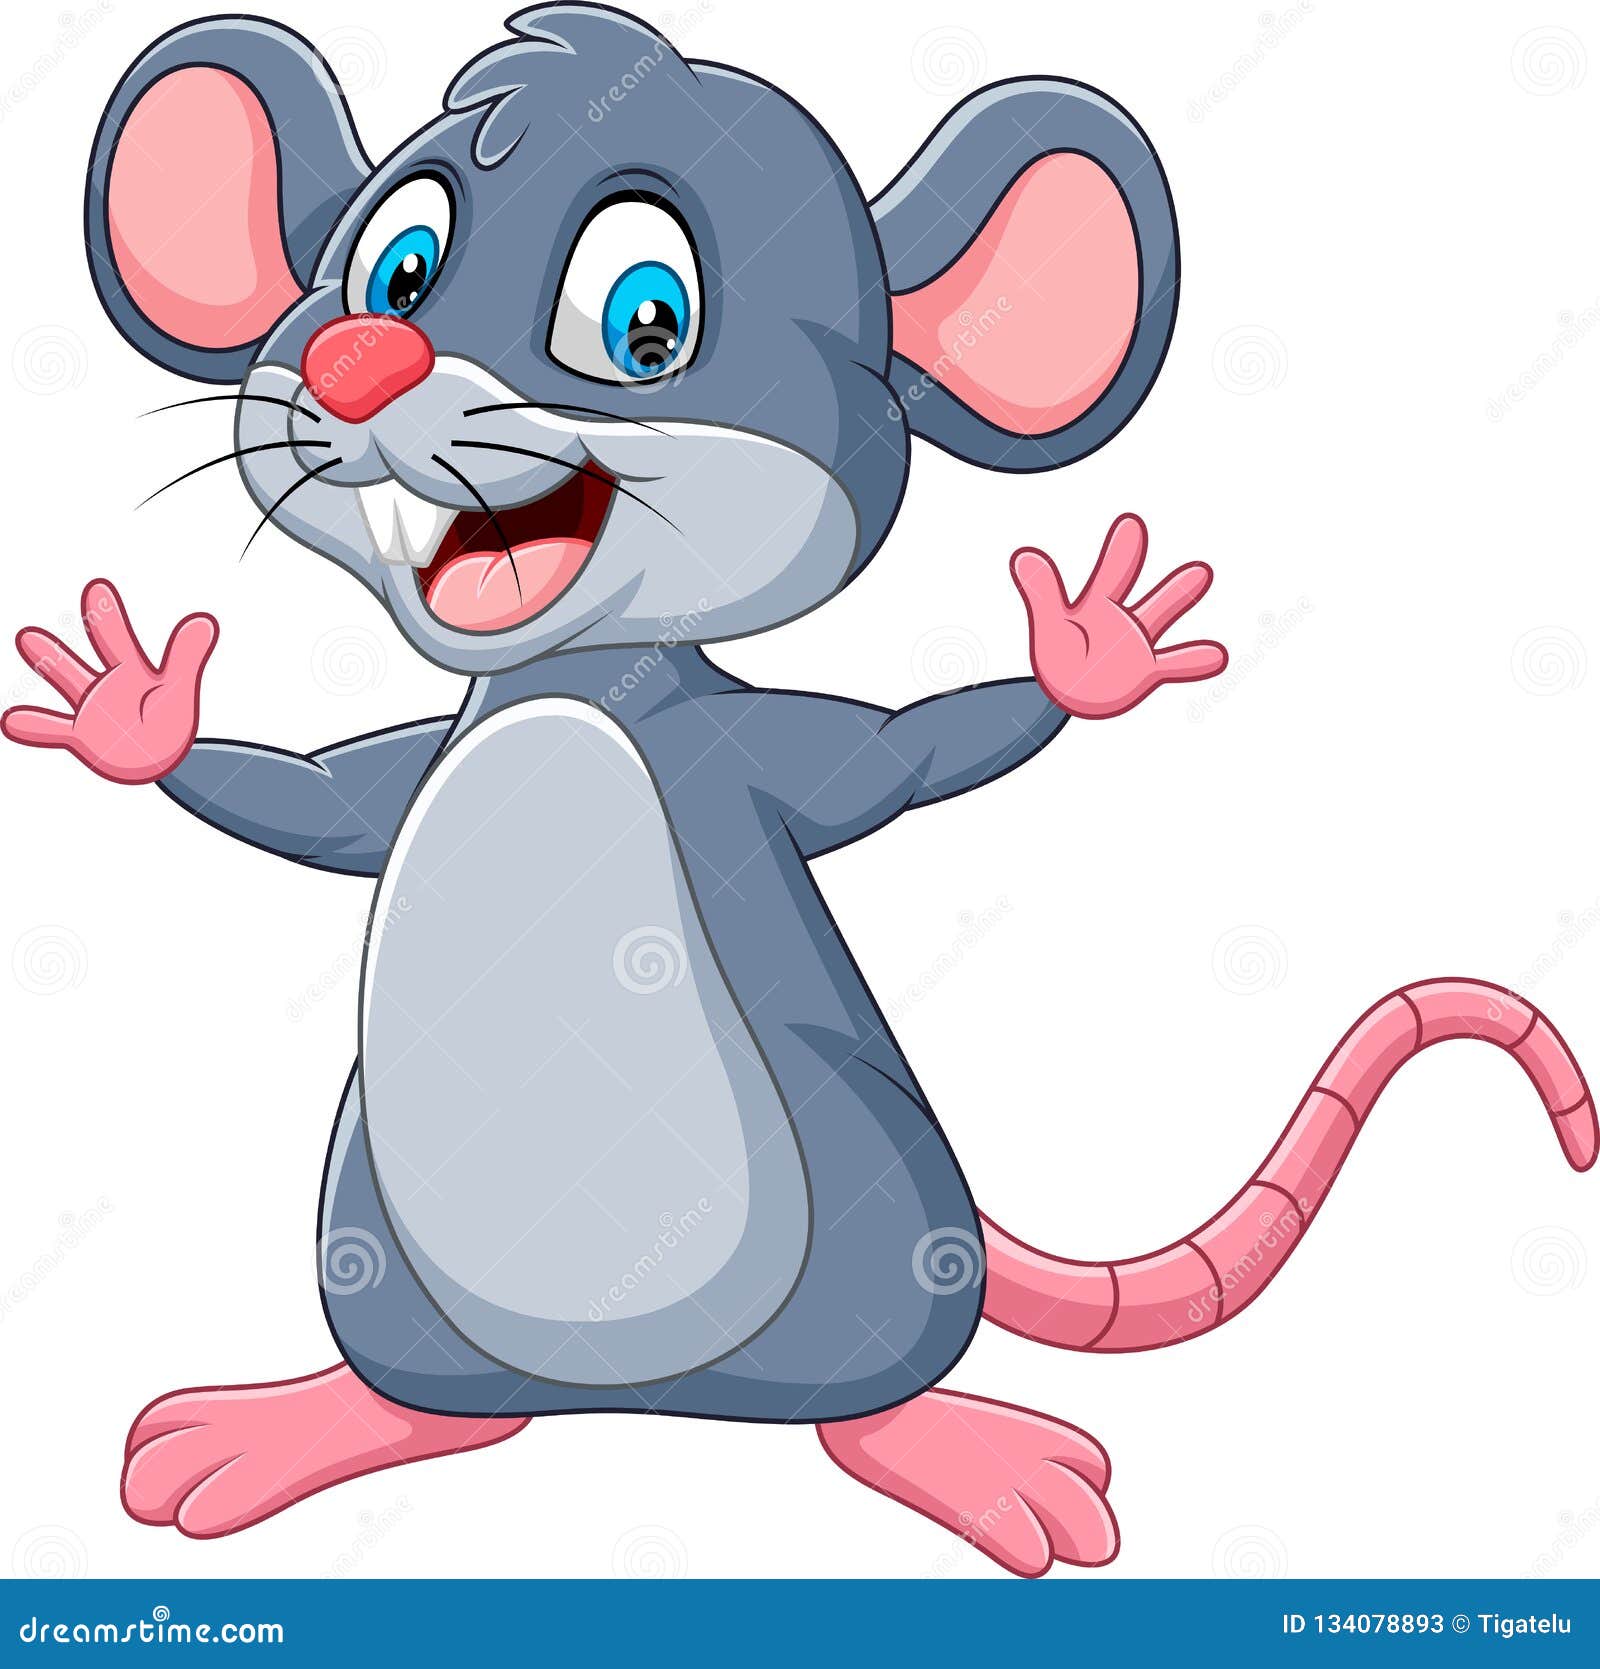 cartoon happy mouse waving